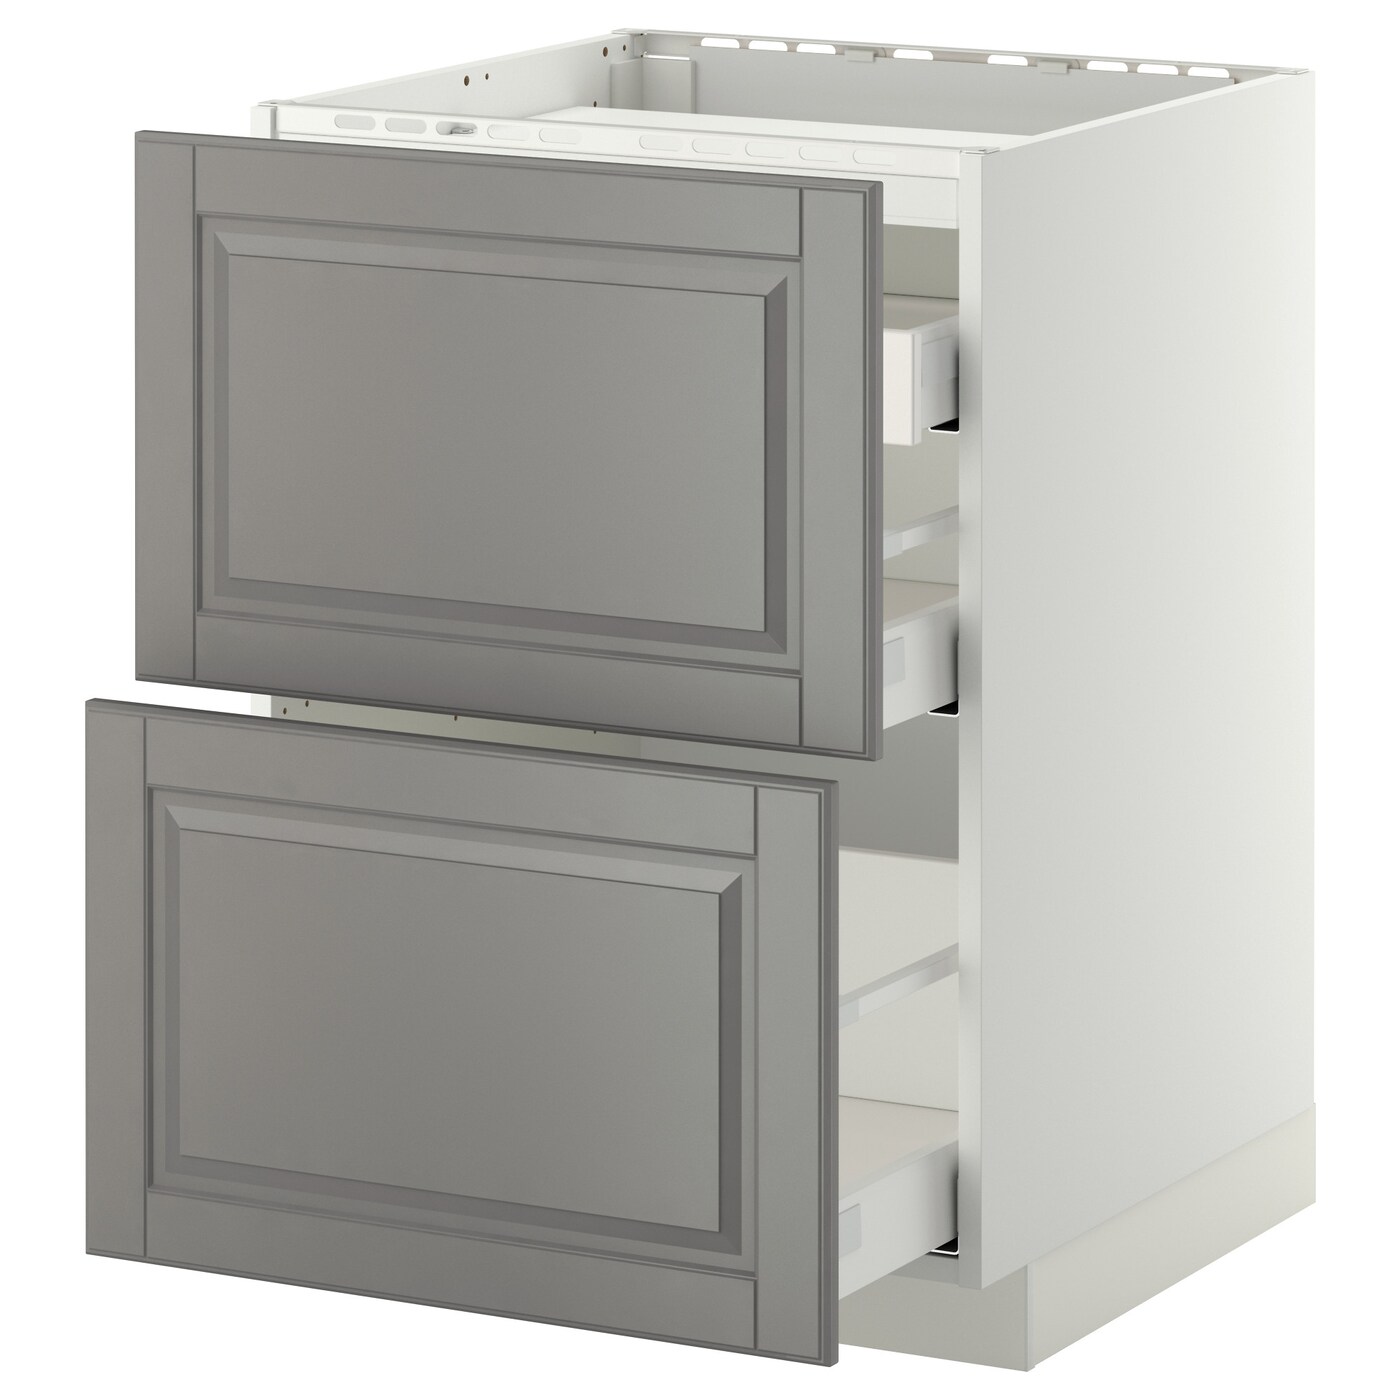 Напольный шкаф  - IKEA METOD MAXIMERA, 88x62,1x60см, белый/серый, МЕТОД МАКСИМЕРА ИКЕА